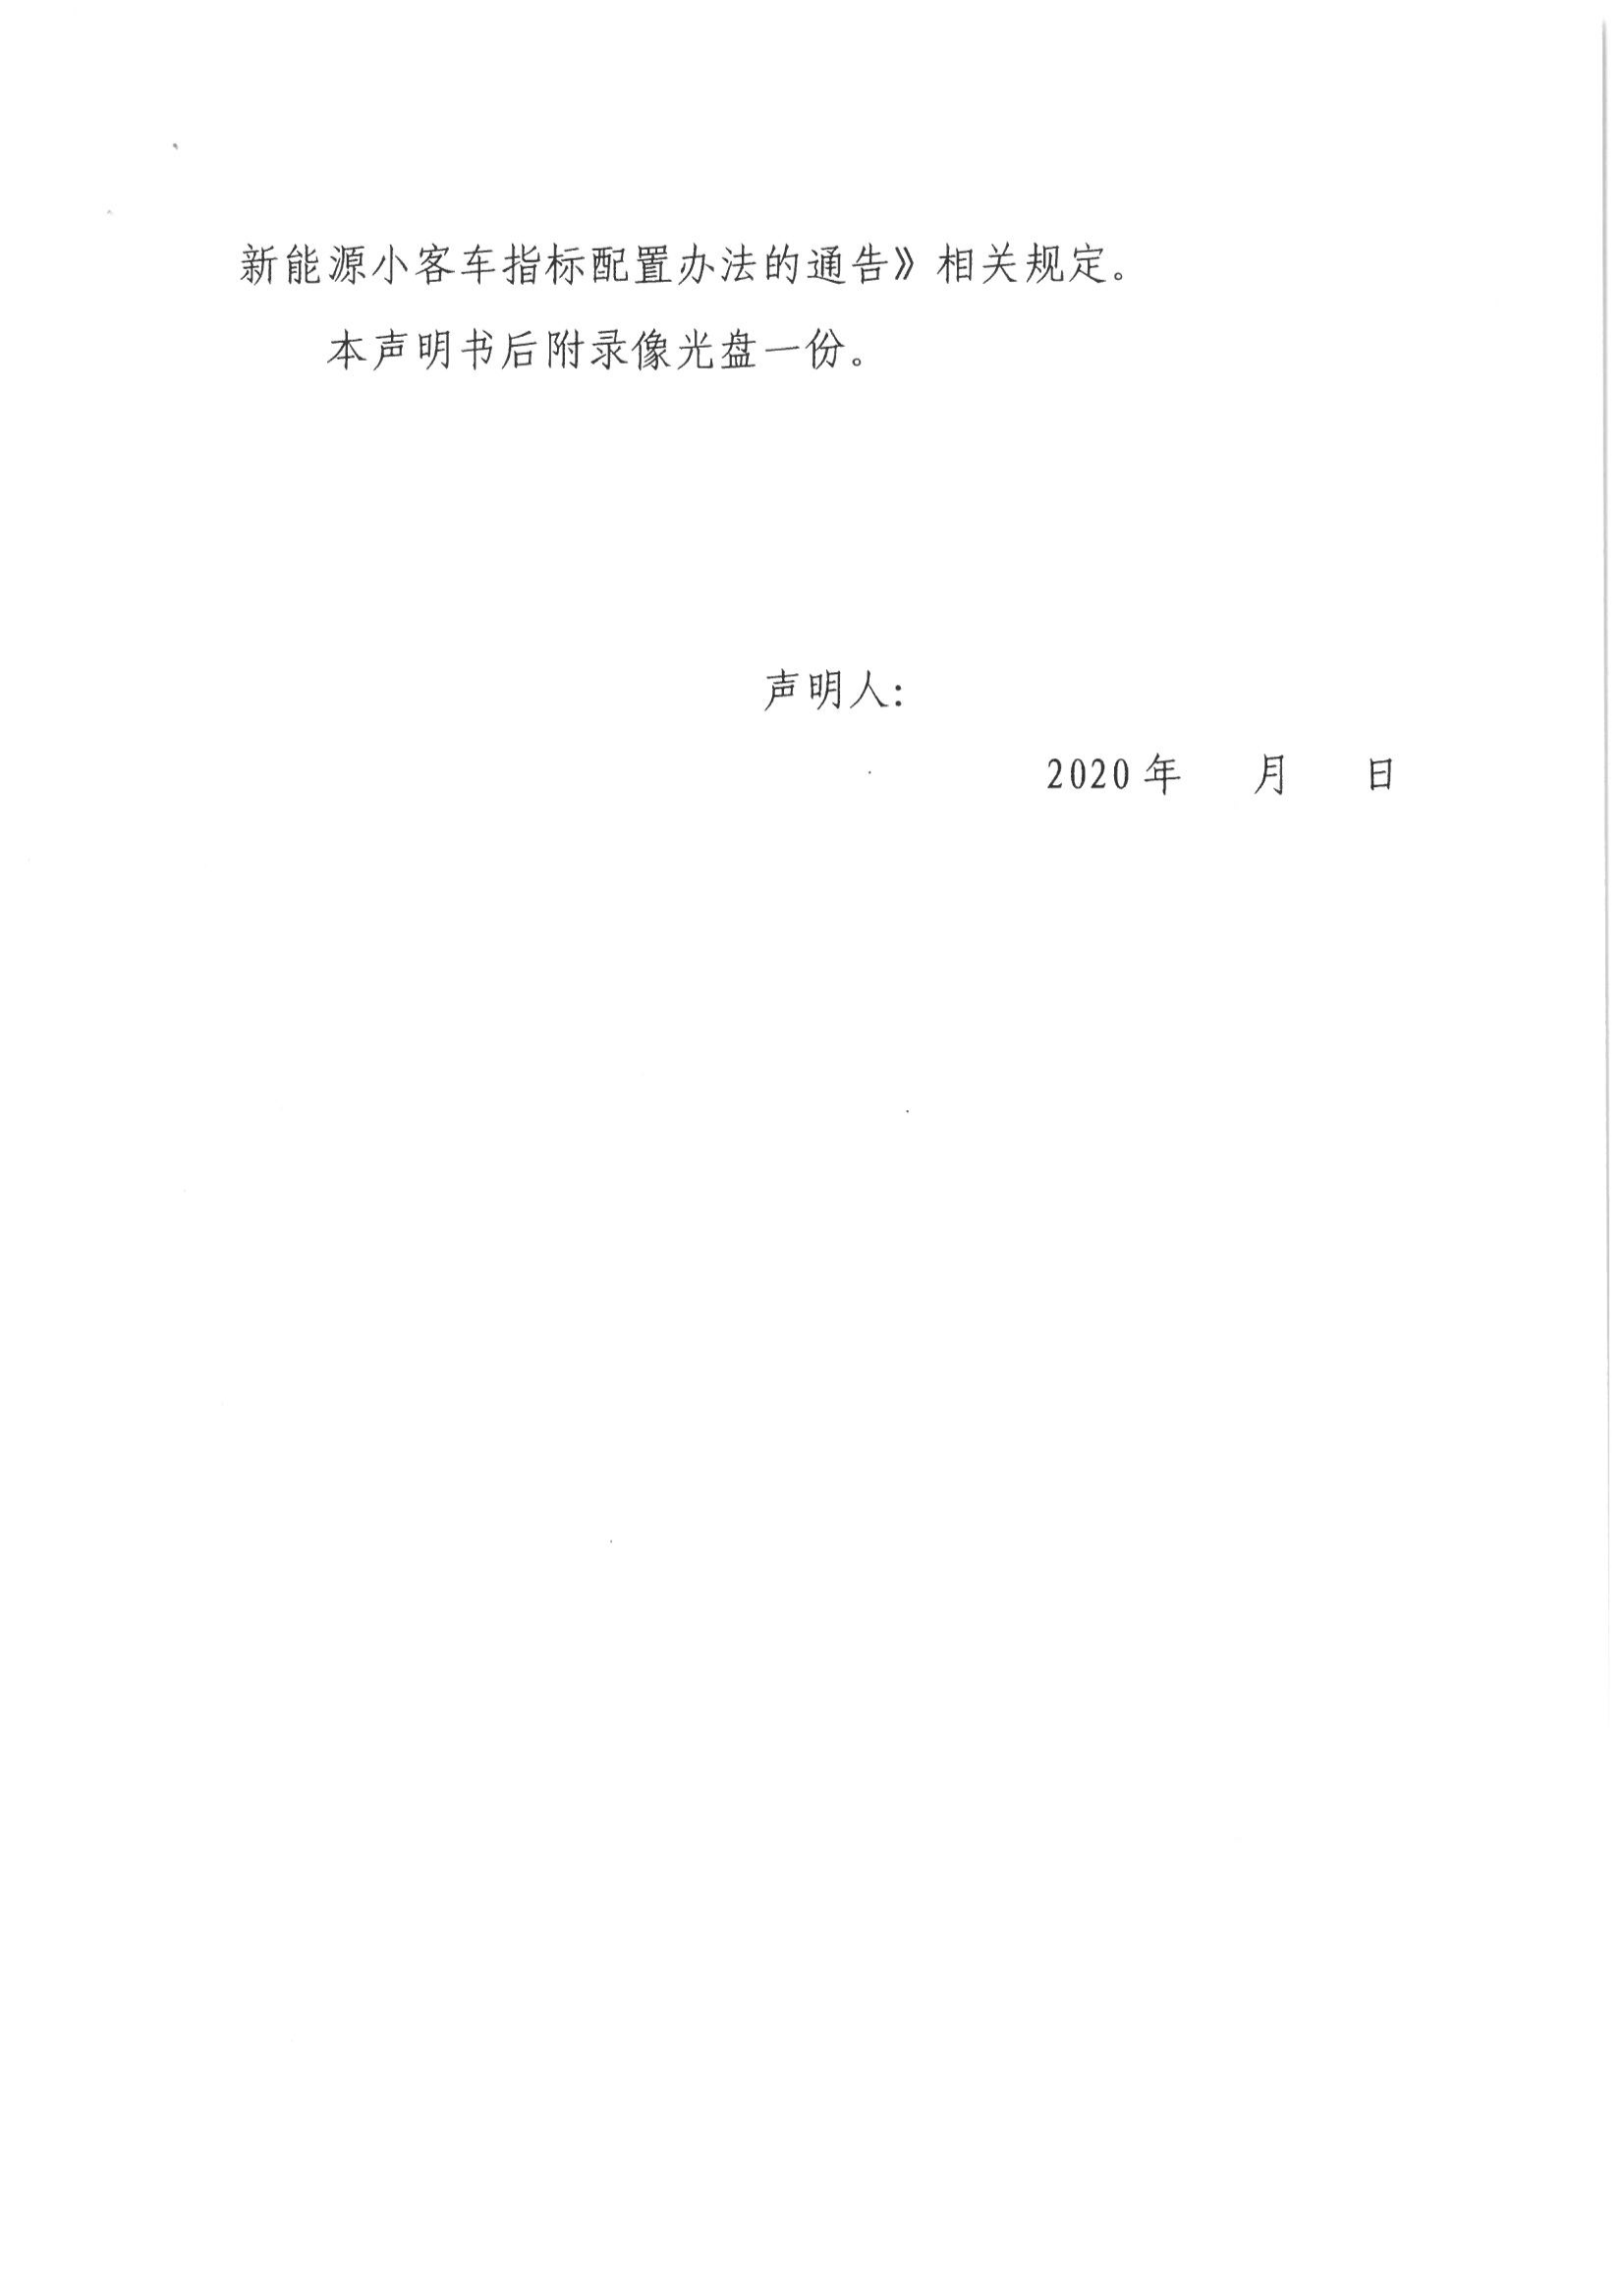 10、北京市公证协会关于印发《北京市公证协会规范执业指引》第10号的通知_14